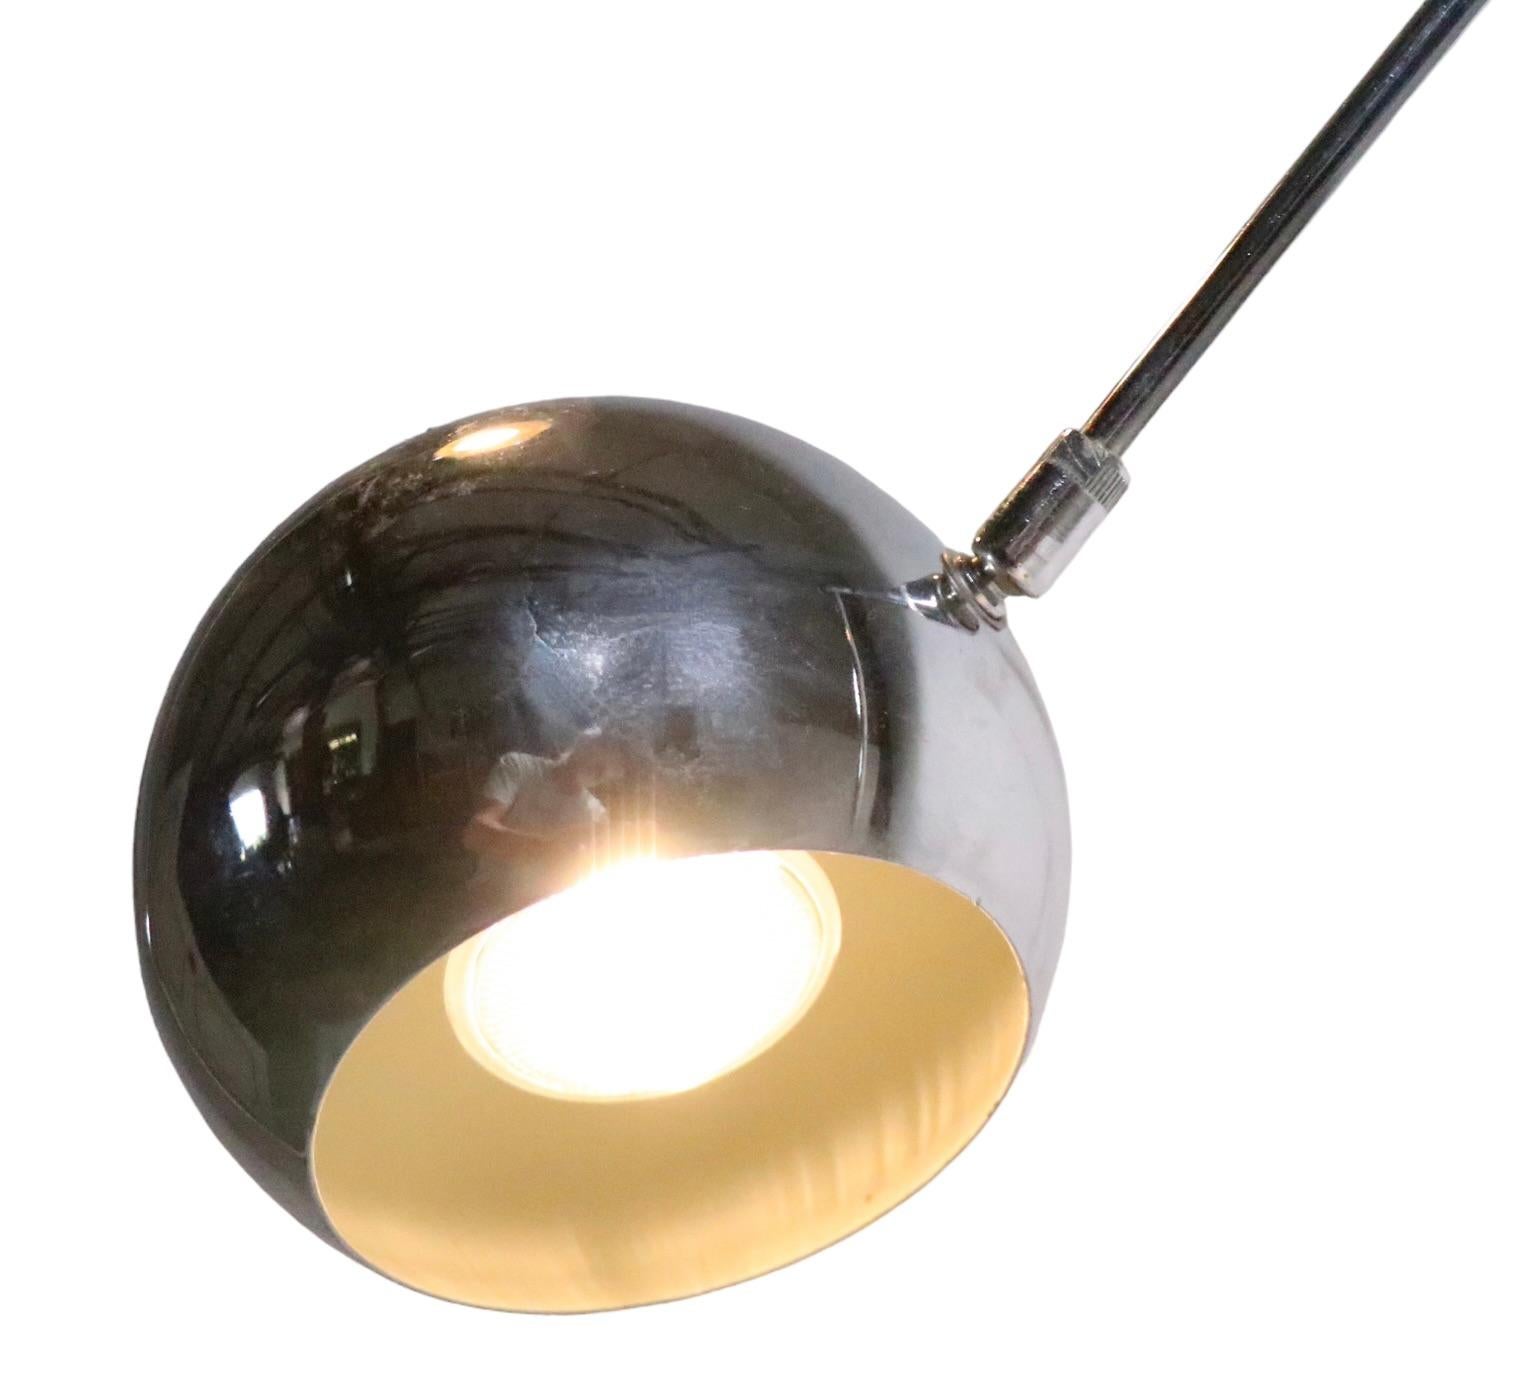 Mid-Century Modern Pair of Adjustable Chrome Eyeball Orbiter Floor Lamps by Sonneman C 1970s